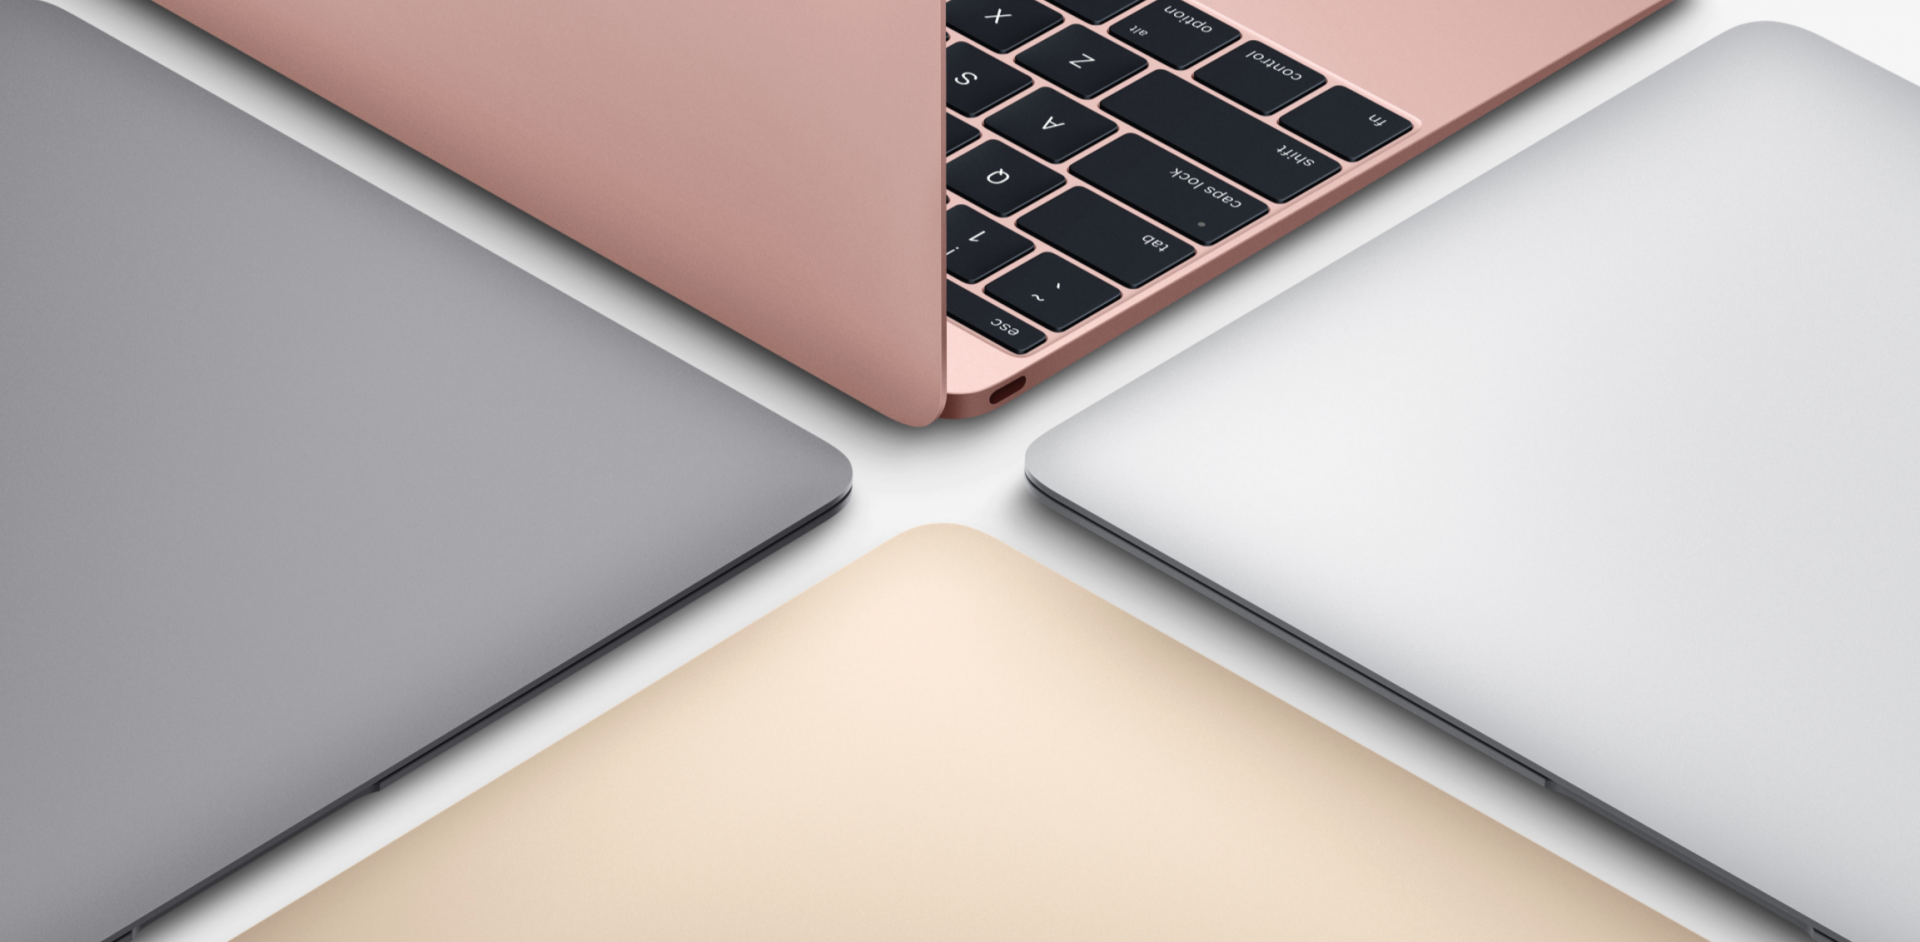 มาเงียบๆ! Apple เปิดตัว MacBook รุ่นใหม่แล้ว ไม่ต้องรอถึงวันงาน